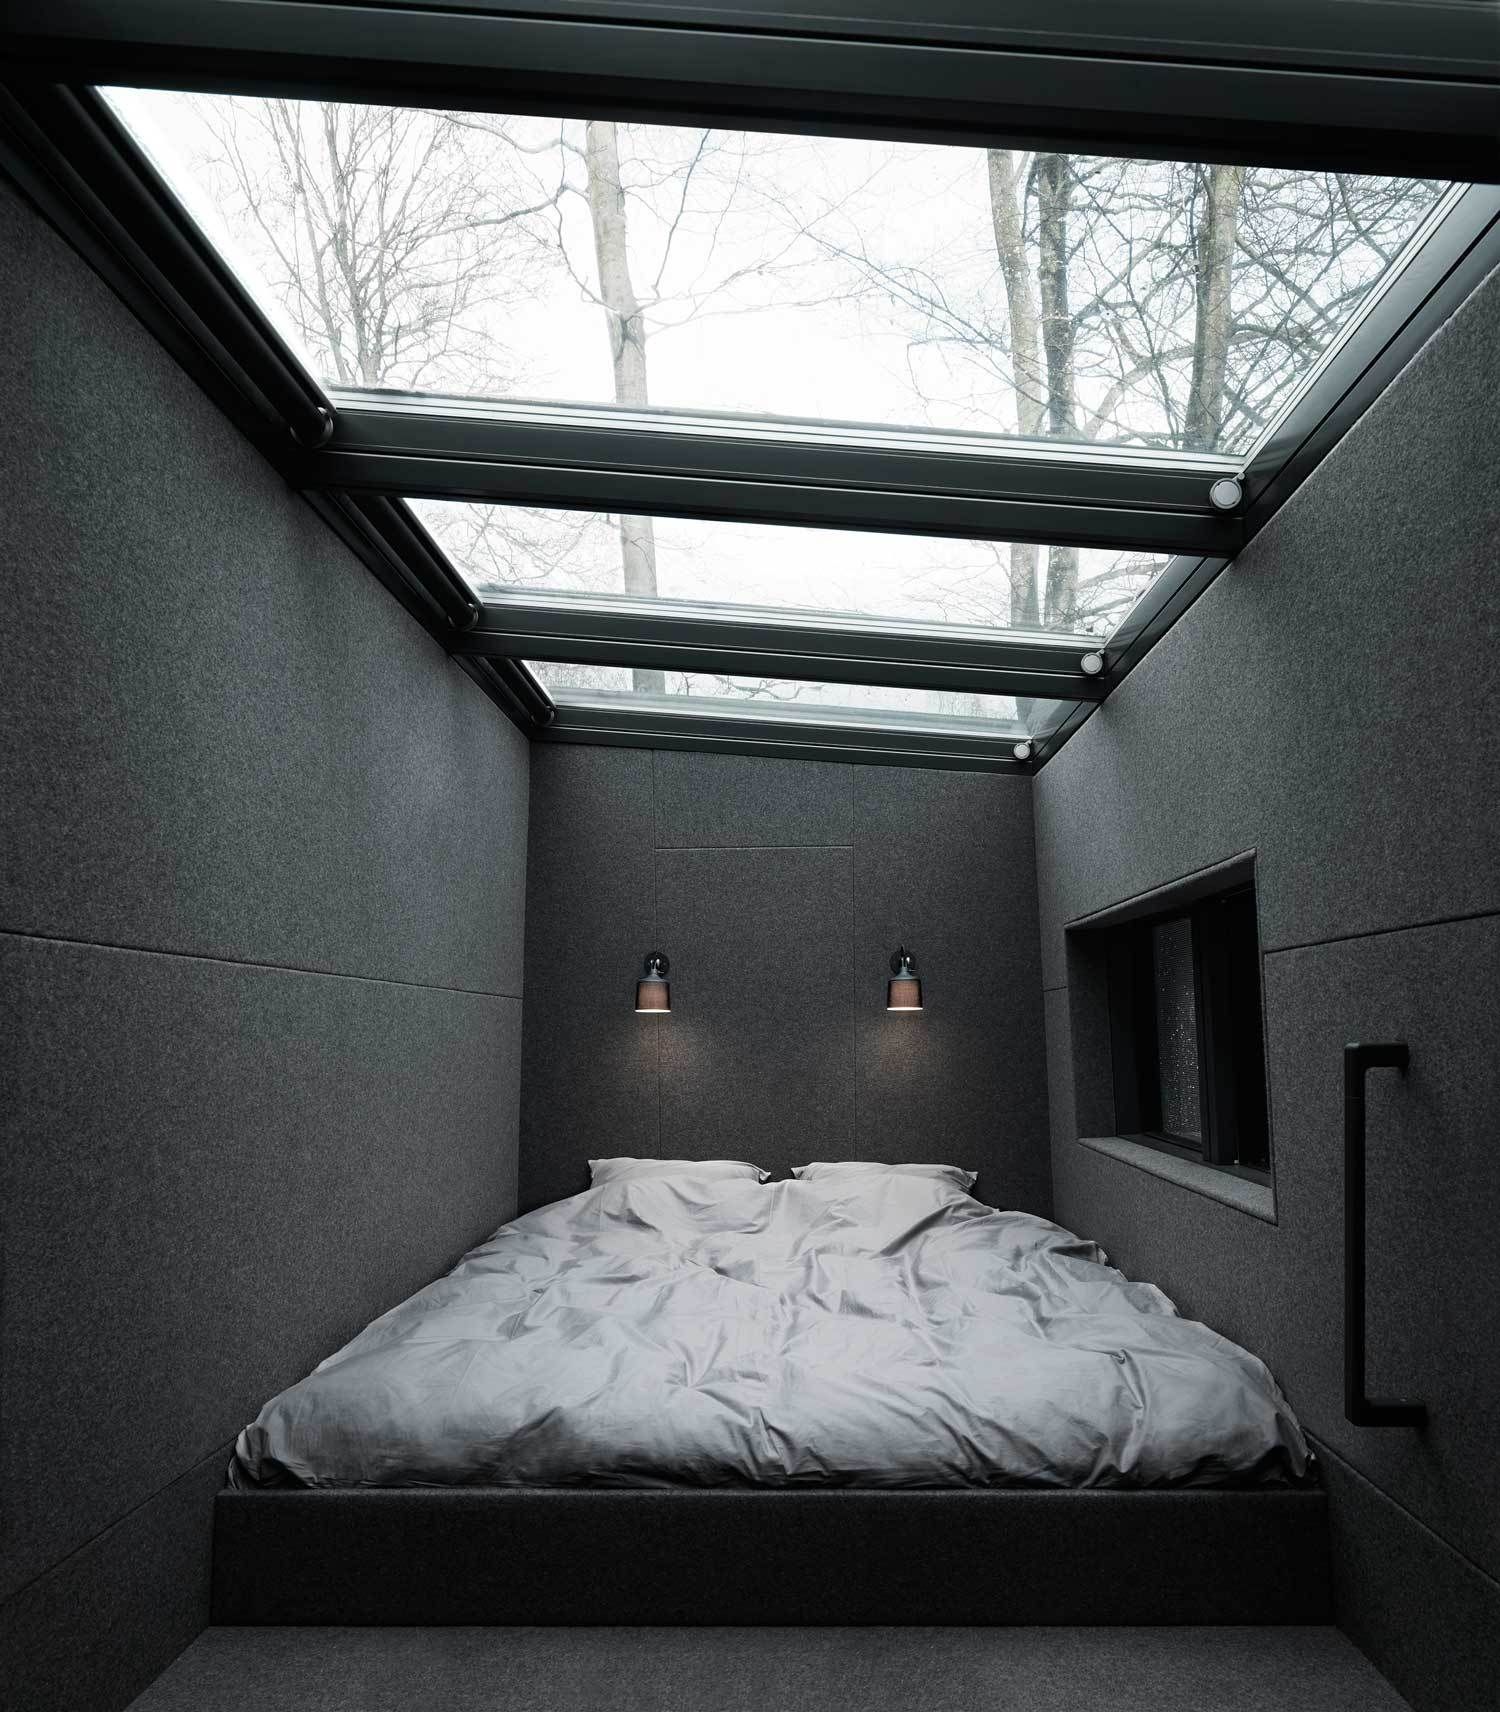 13 gợi ý thiết kế tường kính cho phòng ngủ để hưởng trọn tầm nhìn tuyệt đẹp bên ngoài - Ảnh 13.